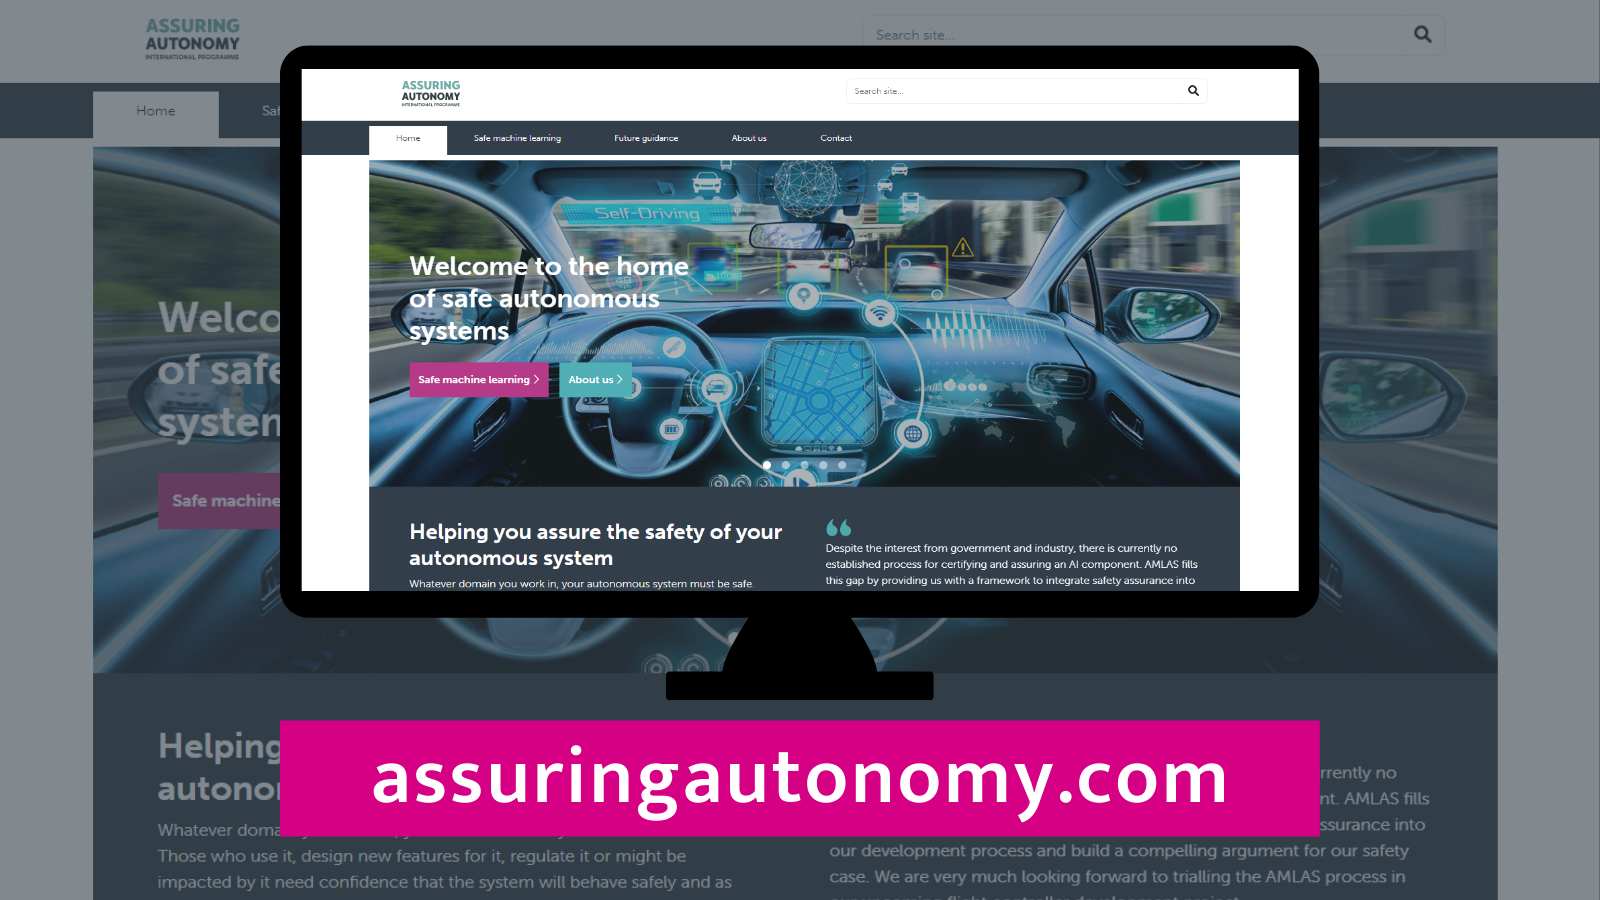 Image of new guidance website assuringautonomy.com